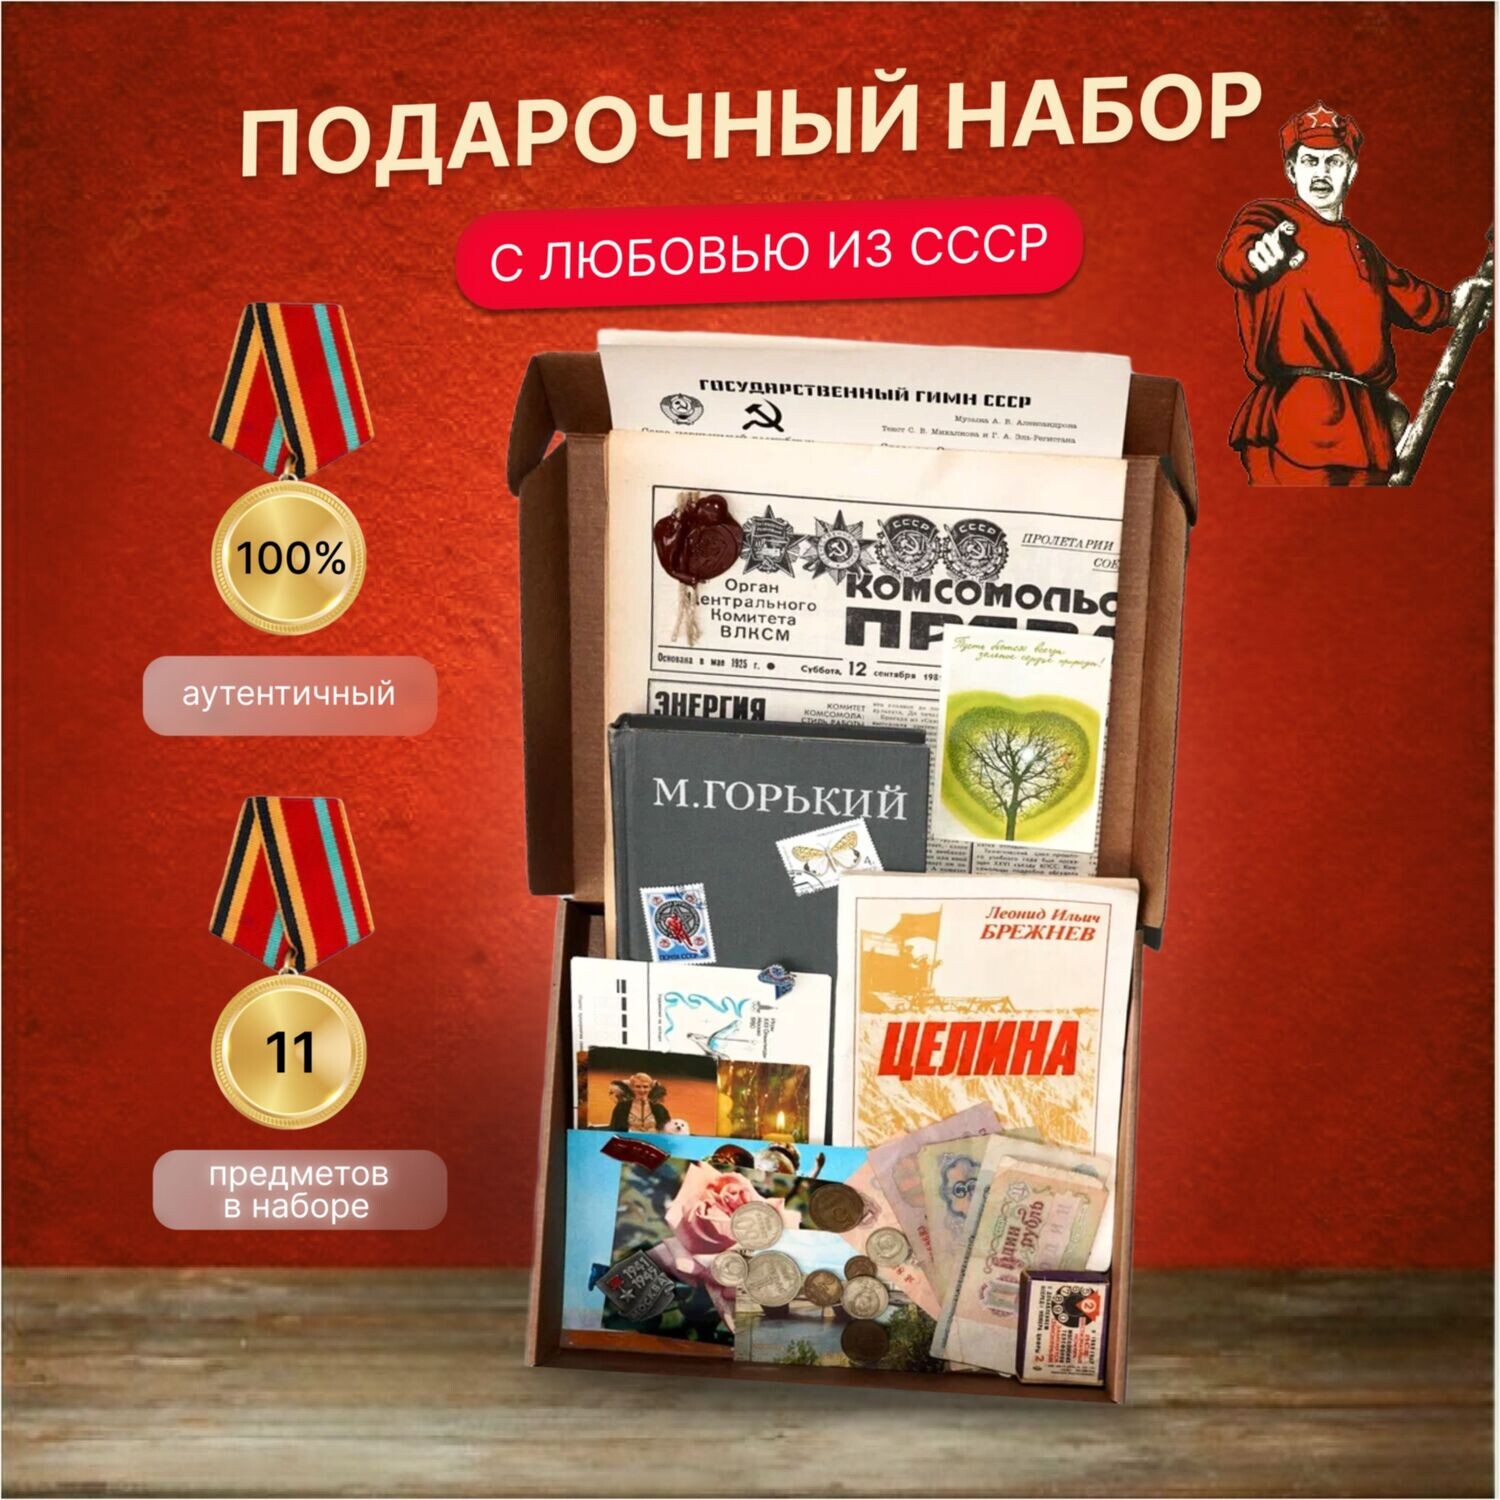 Советский подарочный набор "Из СССР с любовью" - монеты, купюры, книга, значки, марки и др.